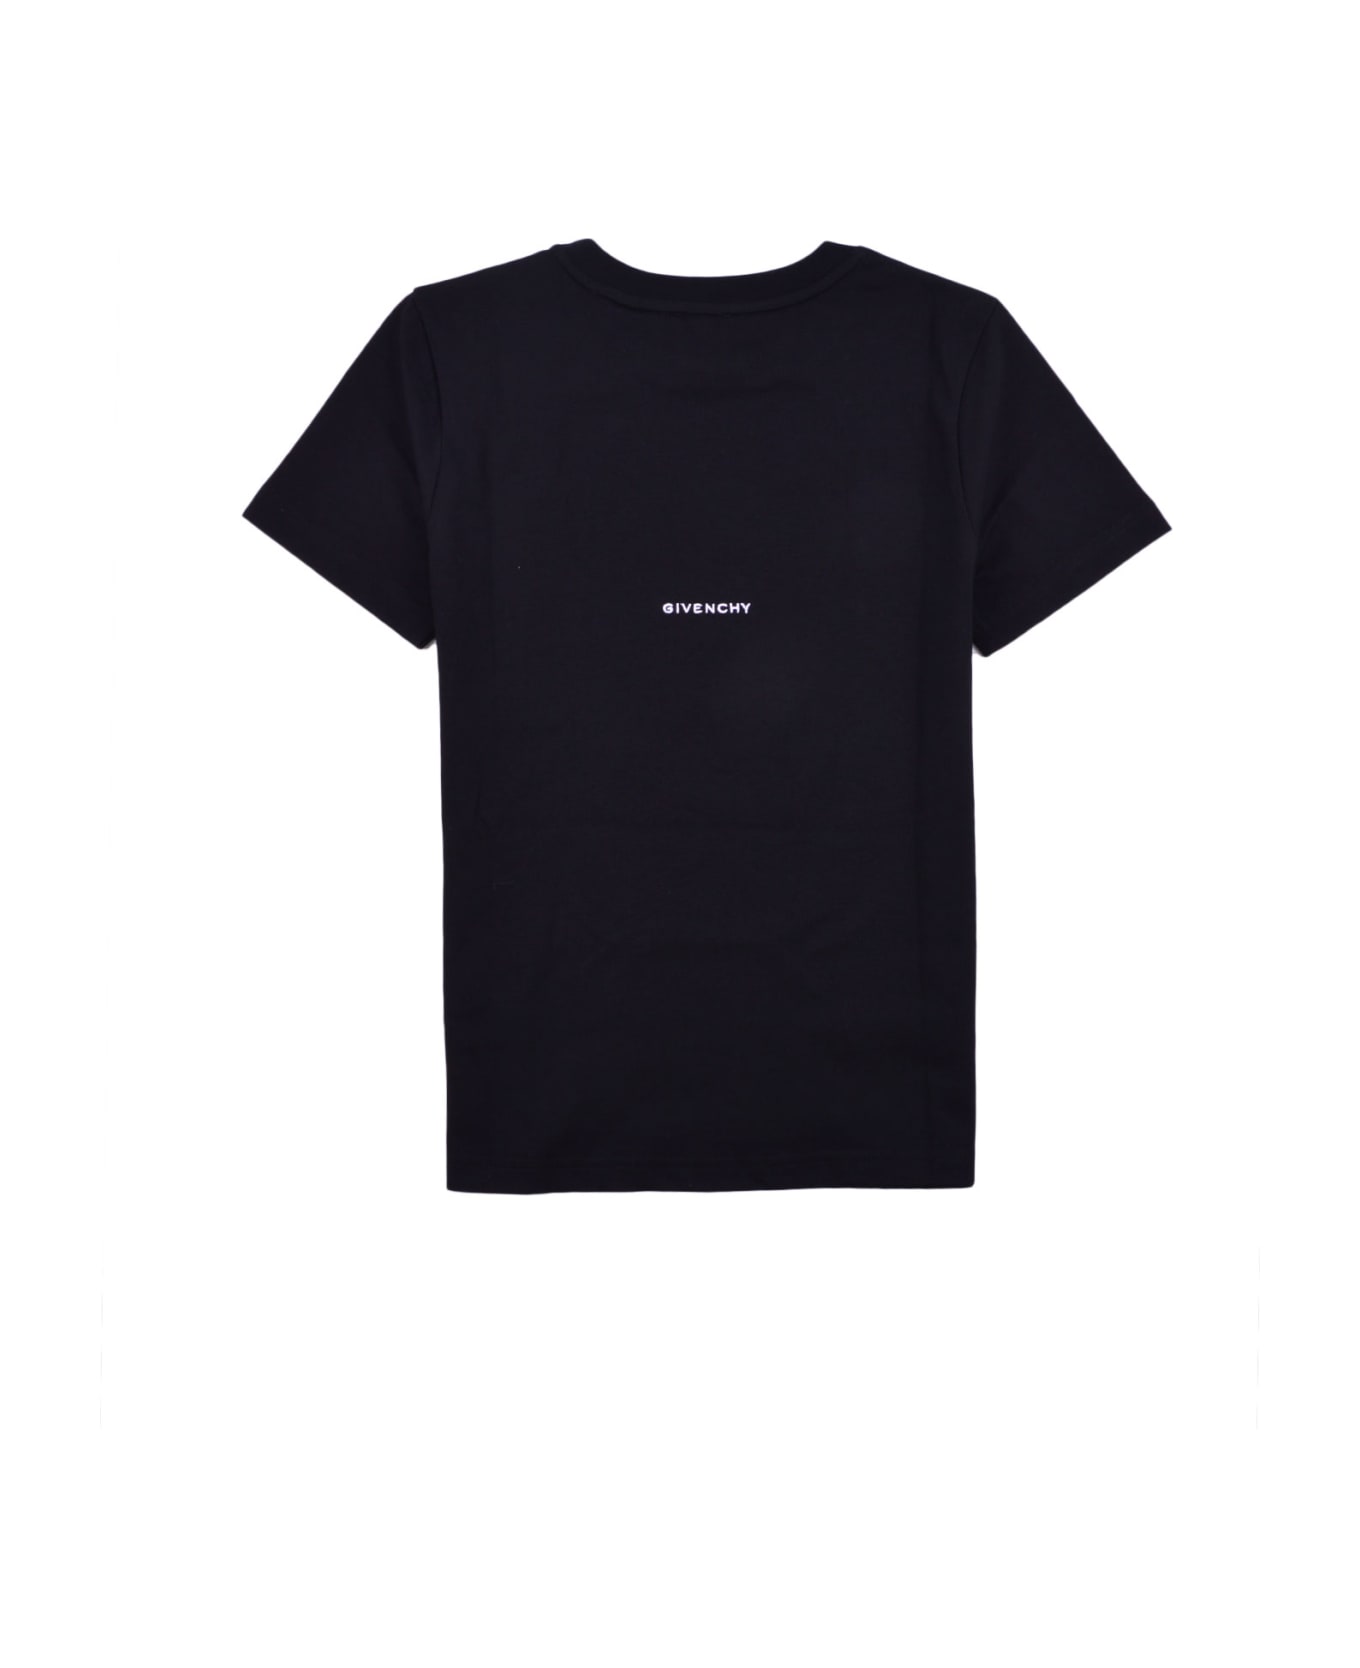 Givenchy Printed T-shirt - Back